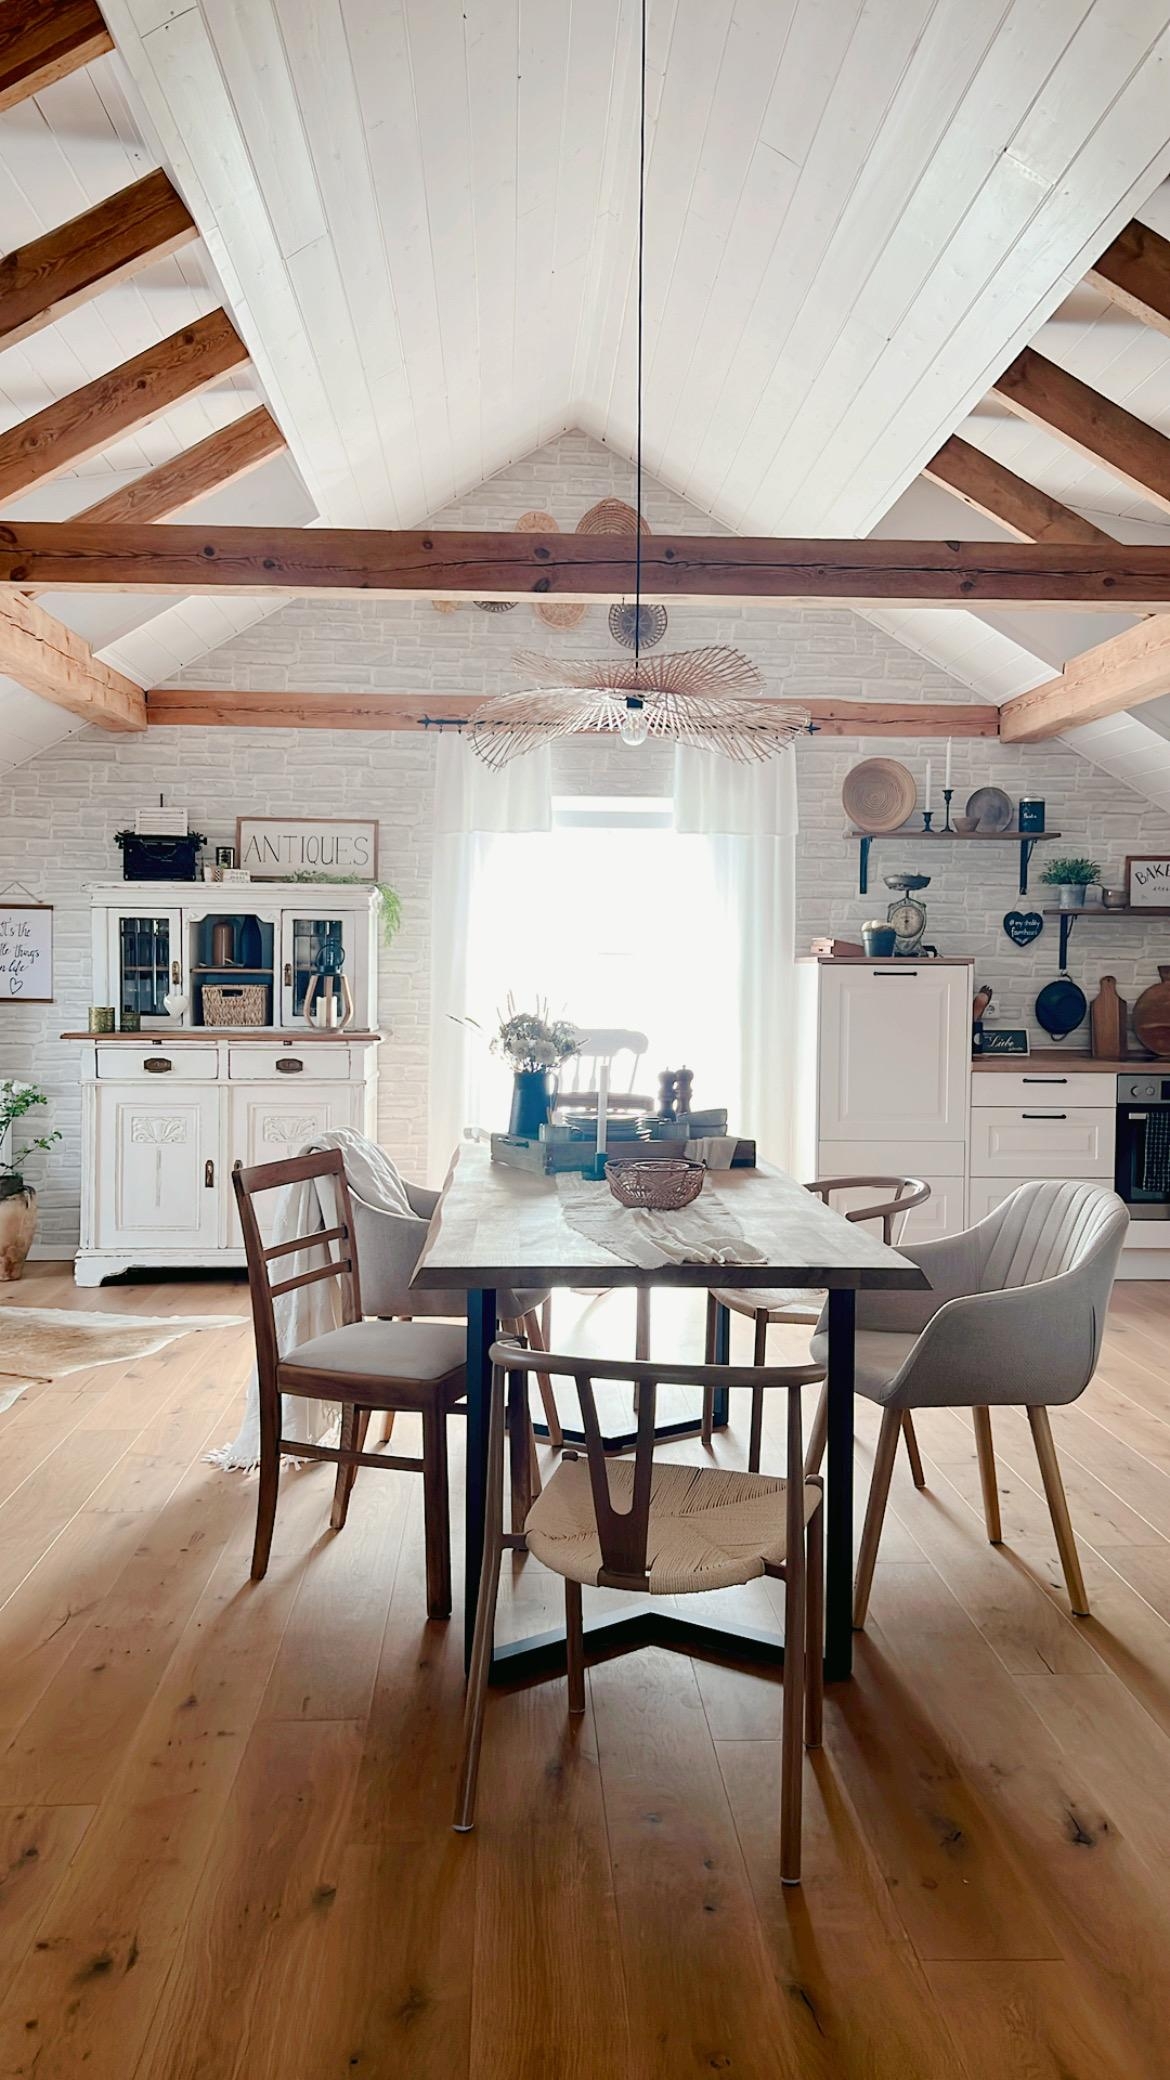 Ich liebe diesen Blickwinkel in unseren offenen Wohnbereich ♥️
#couchstyle #Raumplanung #farmhousestyle #boho #vintage